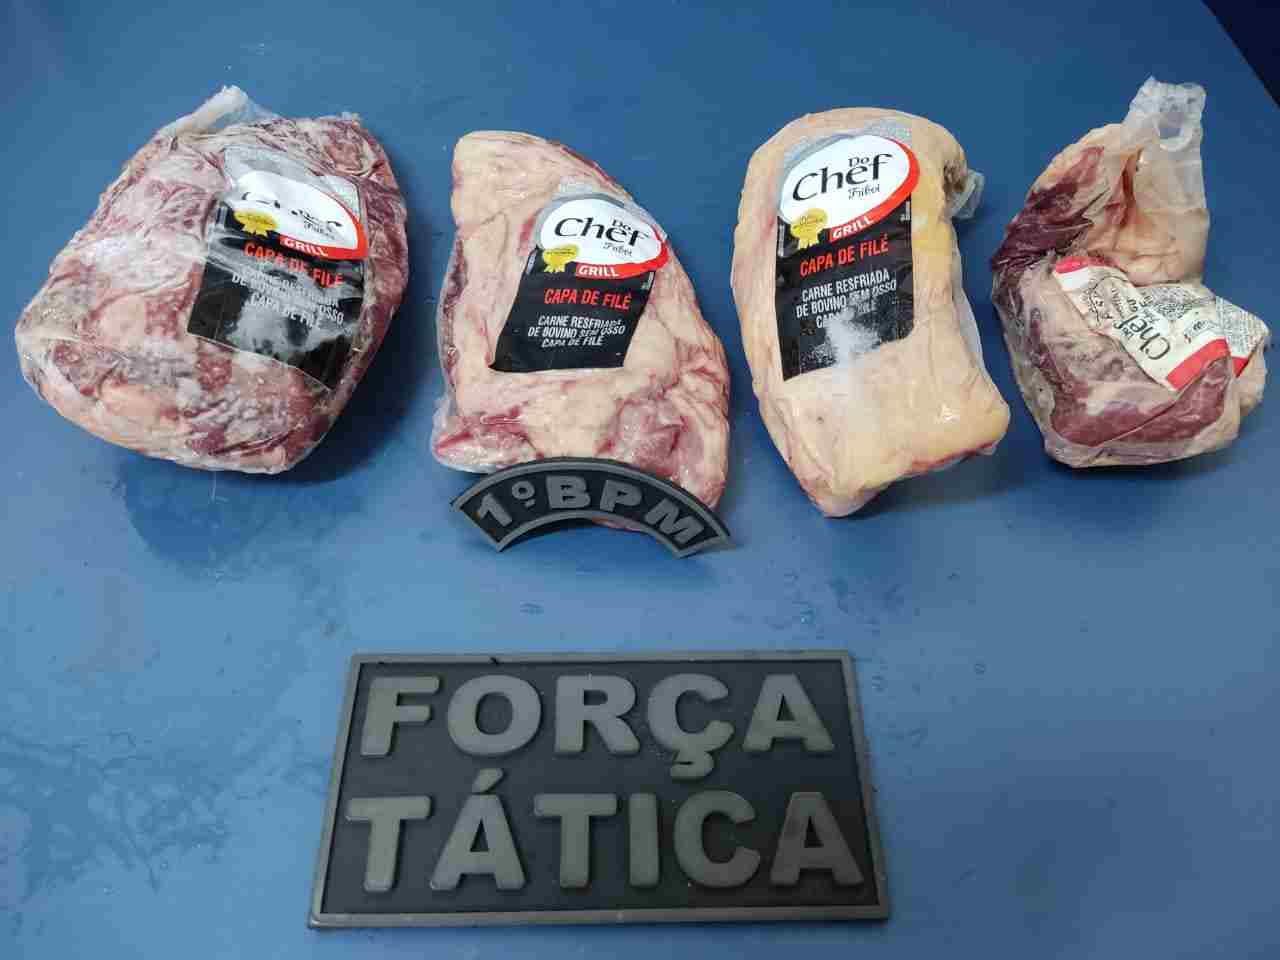 Suspeito de comprar carne furtada é preso após bandidos invadirem e defecarem em restaurante